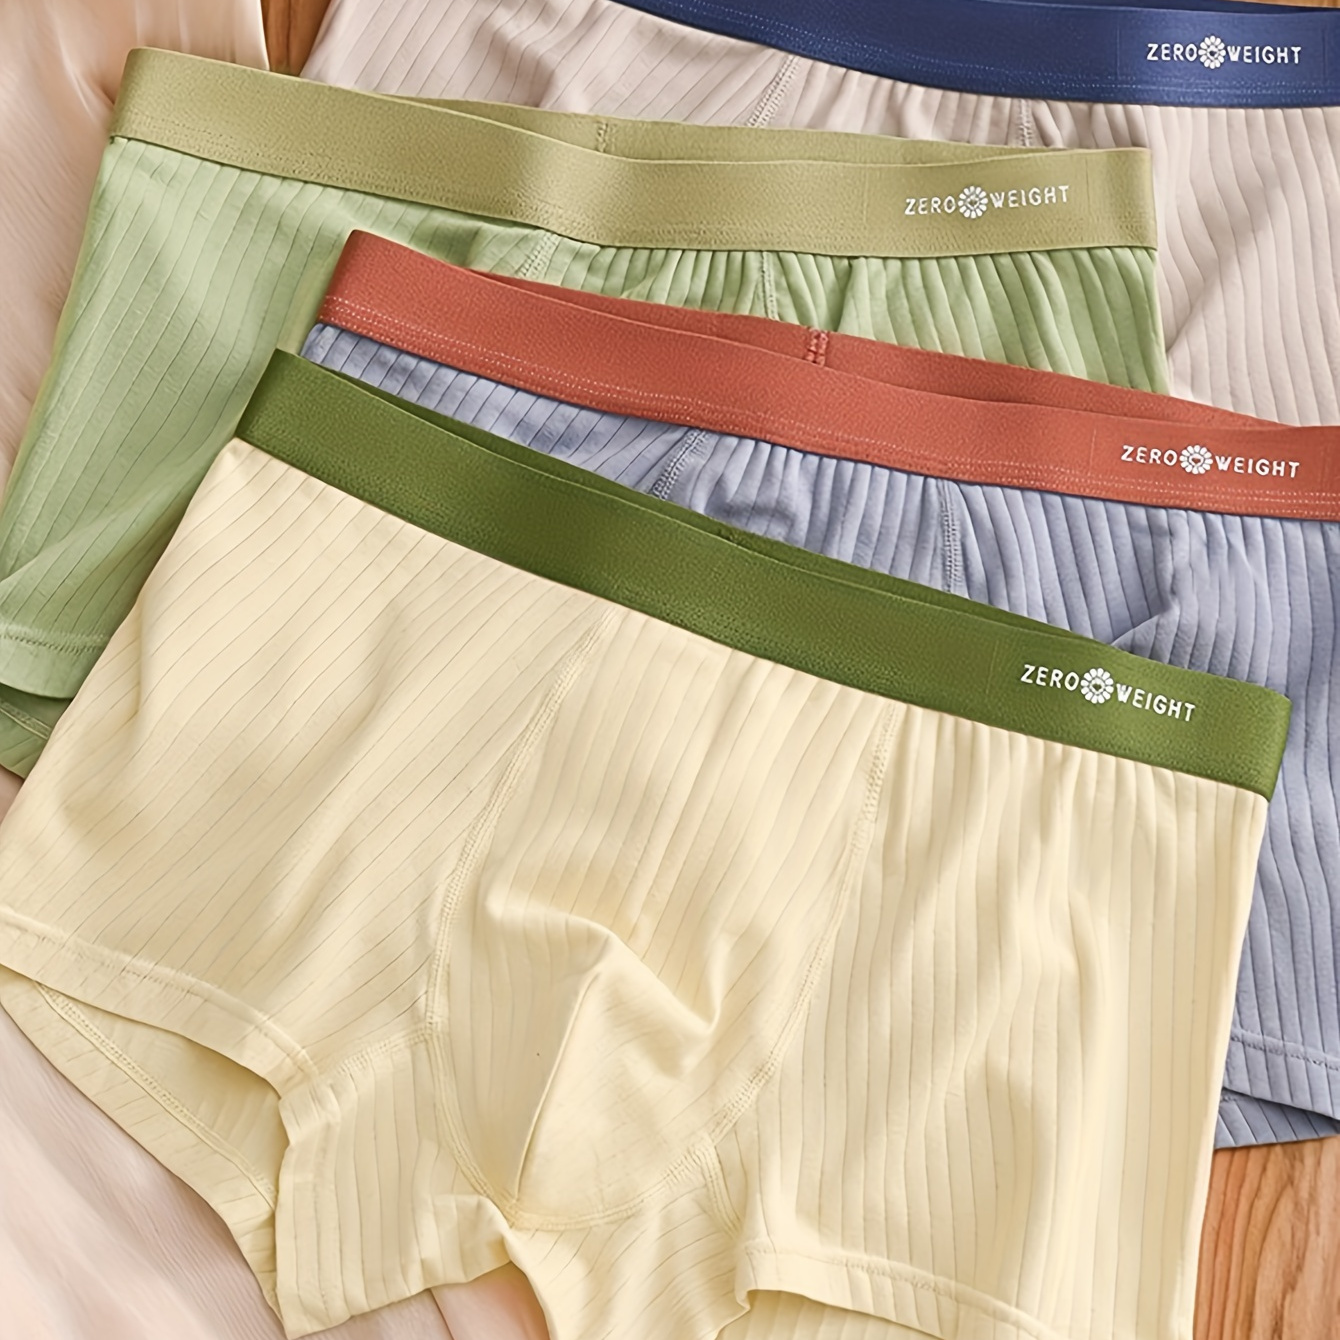 

4pcs Men's Underwear Set Comfortable Cotton Breathable Antibacterial Crotch Men's Underwear Contrast Color Belt Boxer Briefs Men's Loose 4 Corner Shorts